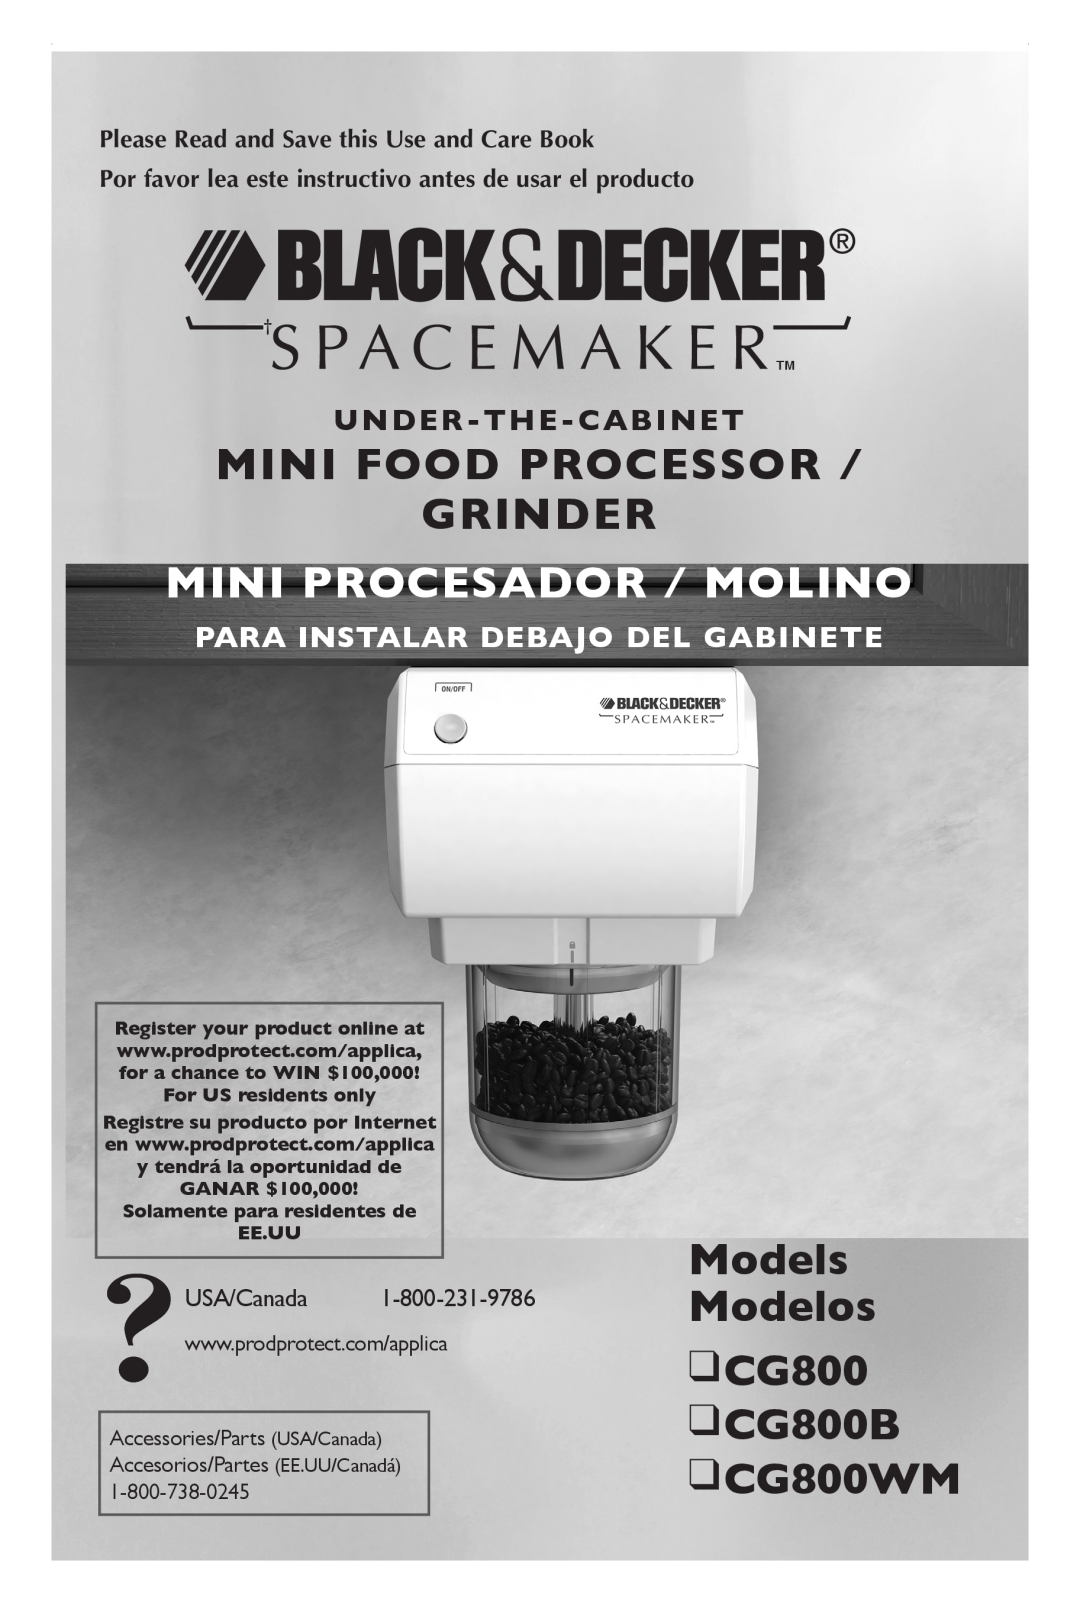 Black & Decker manual Mini Food Processor Grinder, Models Modelos CG800 CG800B CG800WM , Mini Procesador / Molino 